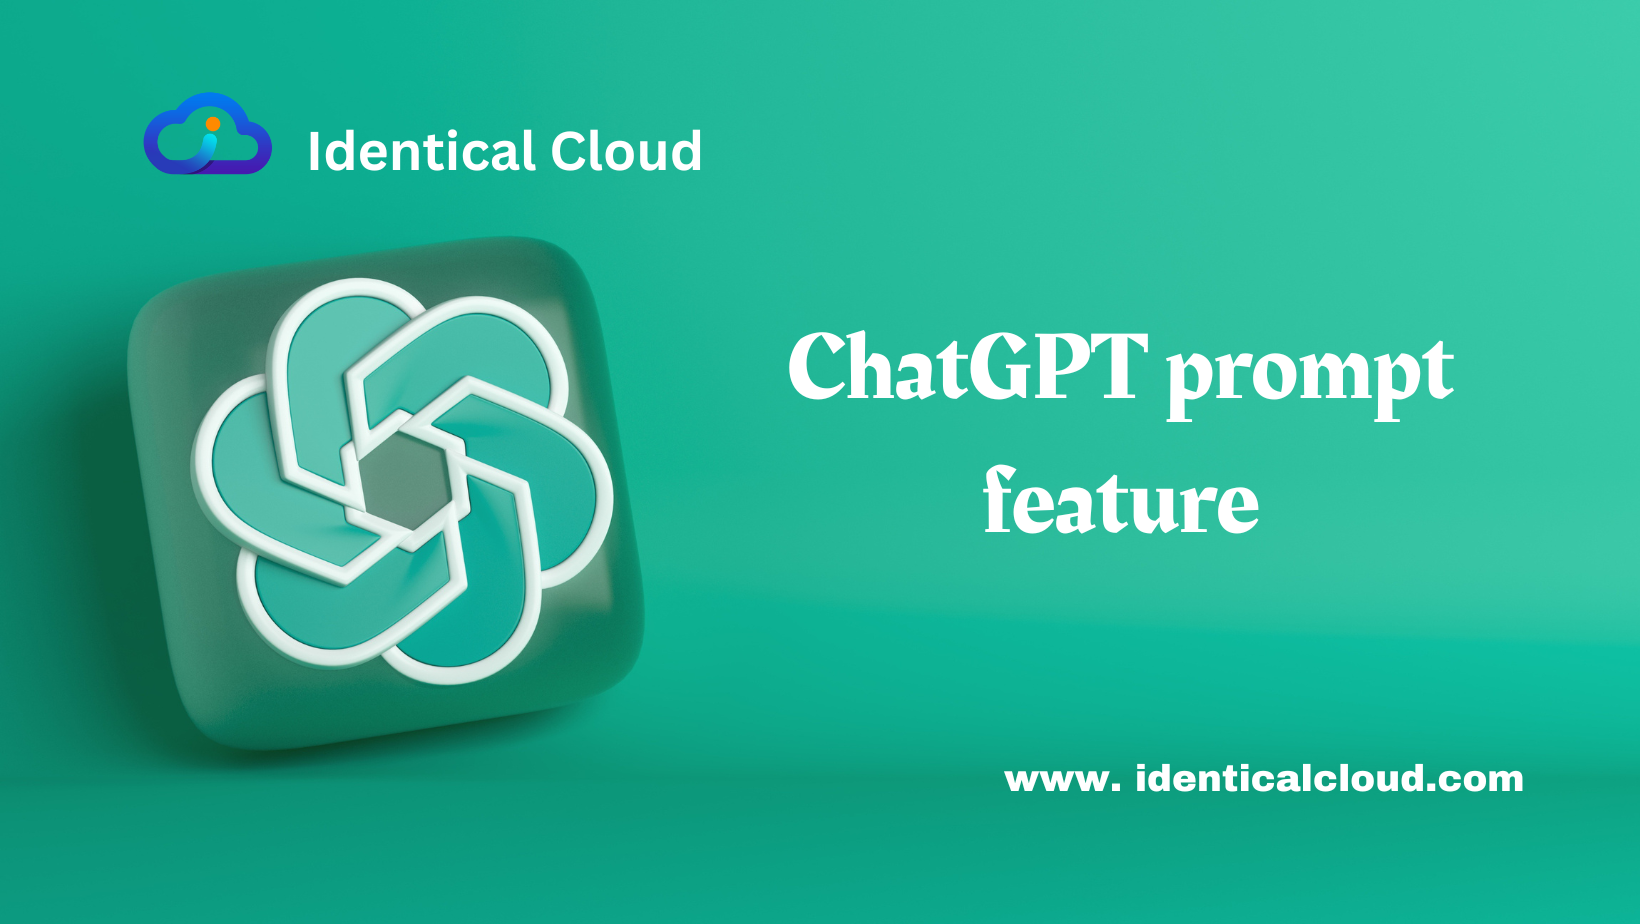 ChatGPT prompt feature - identicalcloud.com